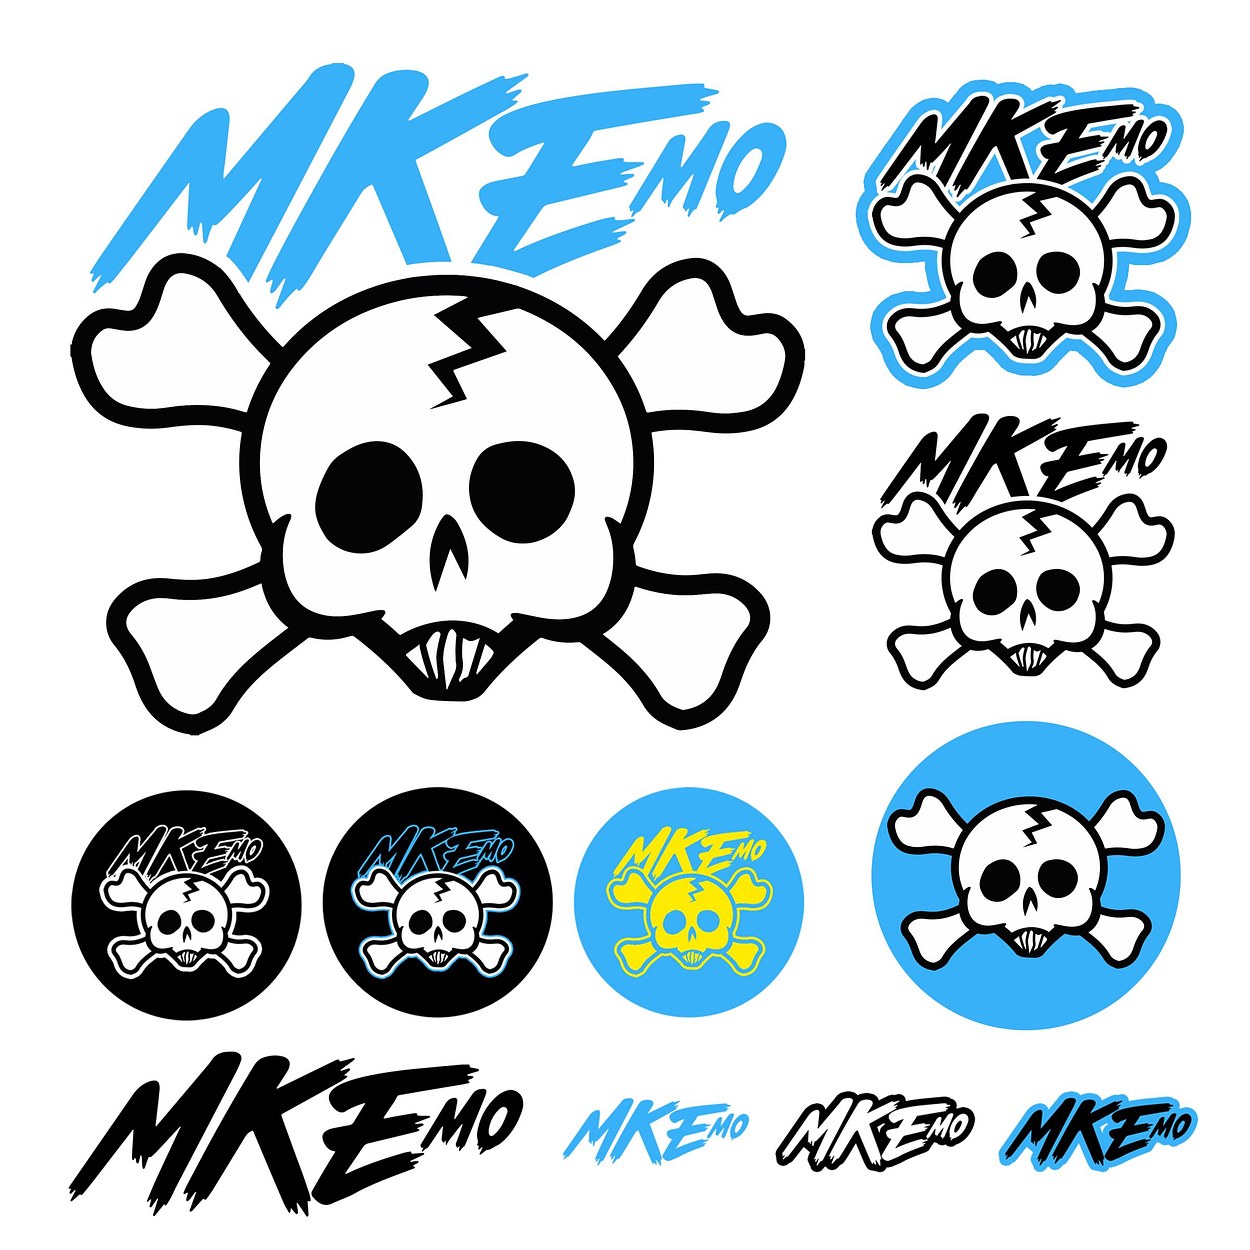 Milwaukee Emo - Full Branding Sheet